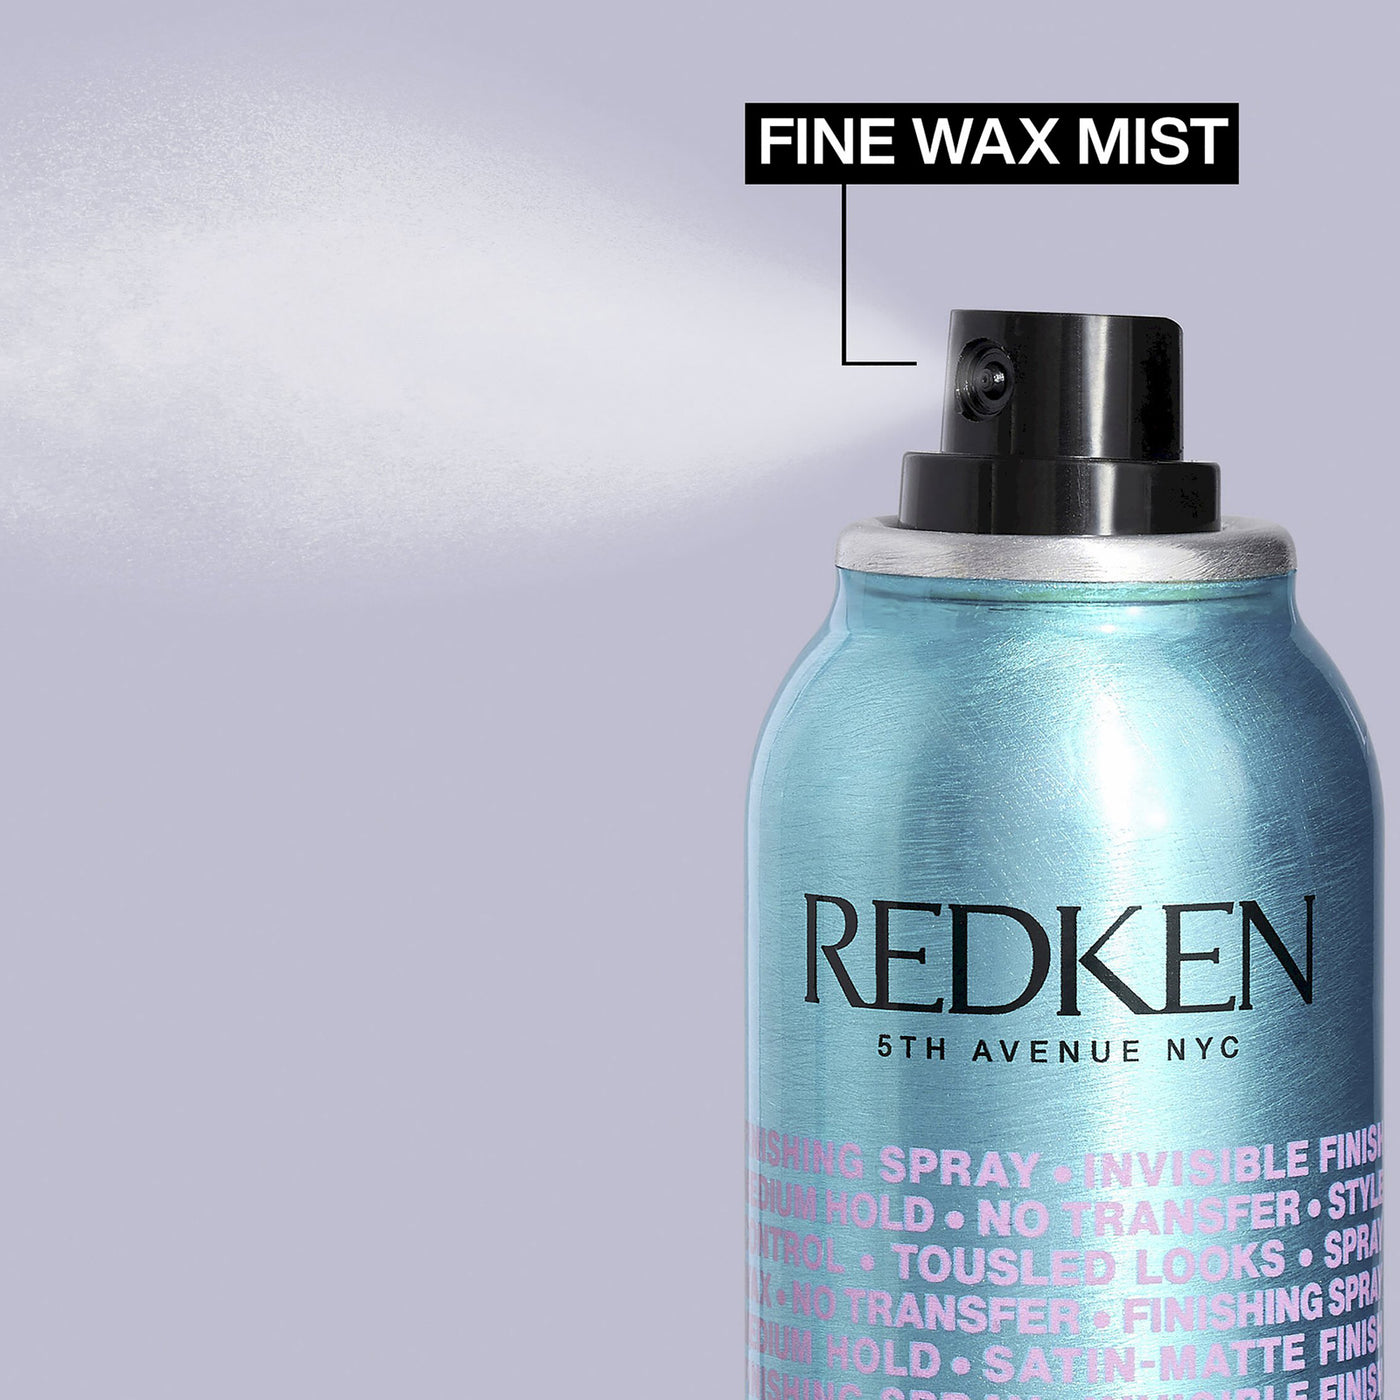 Redken Spray Wax (165g) details